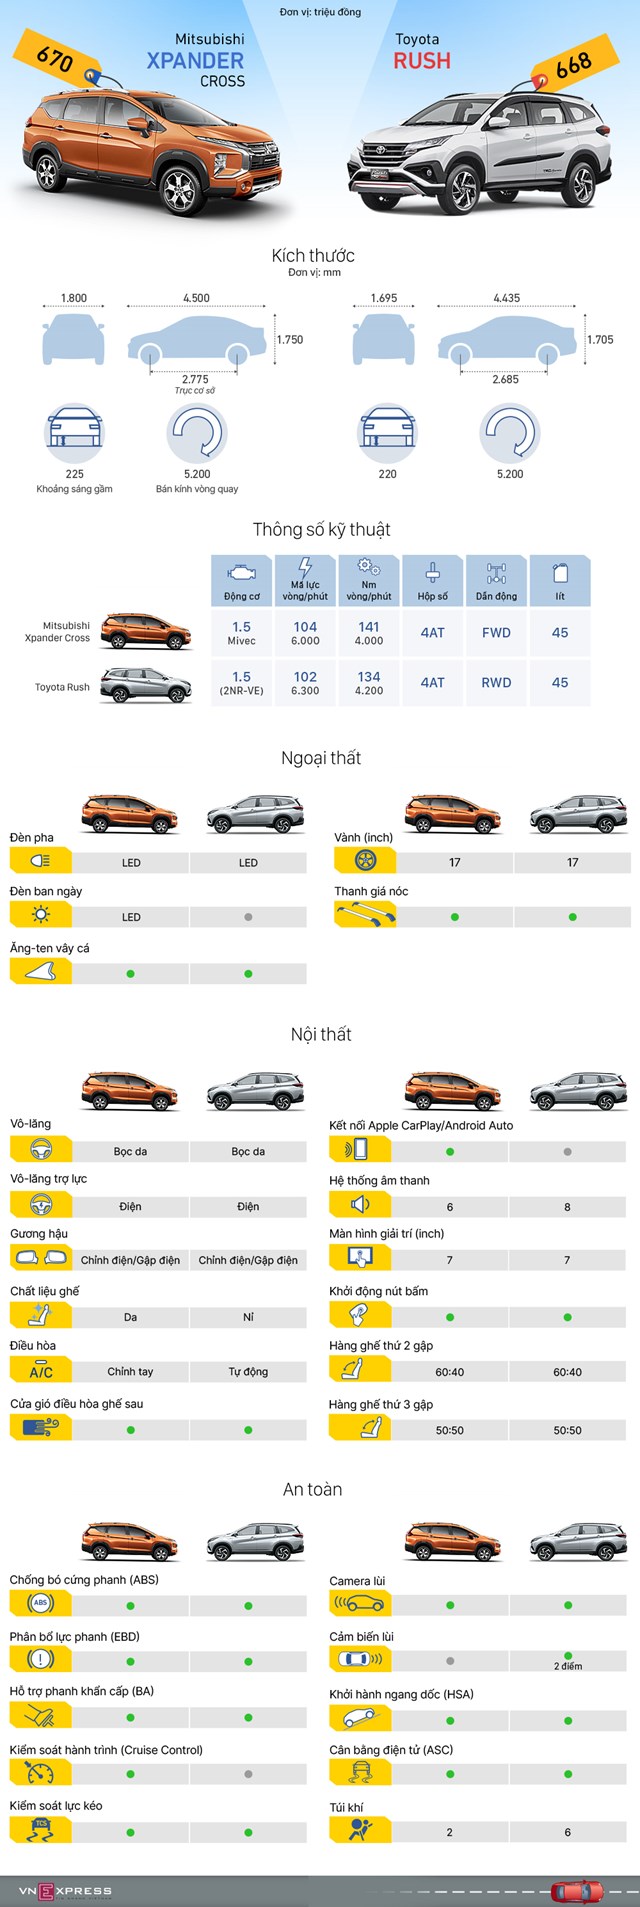 [Infographics] Xpander Cross và Toyota Rush - đua trang bị xe 7 chỗ gầm cao - Ảnh 1